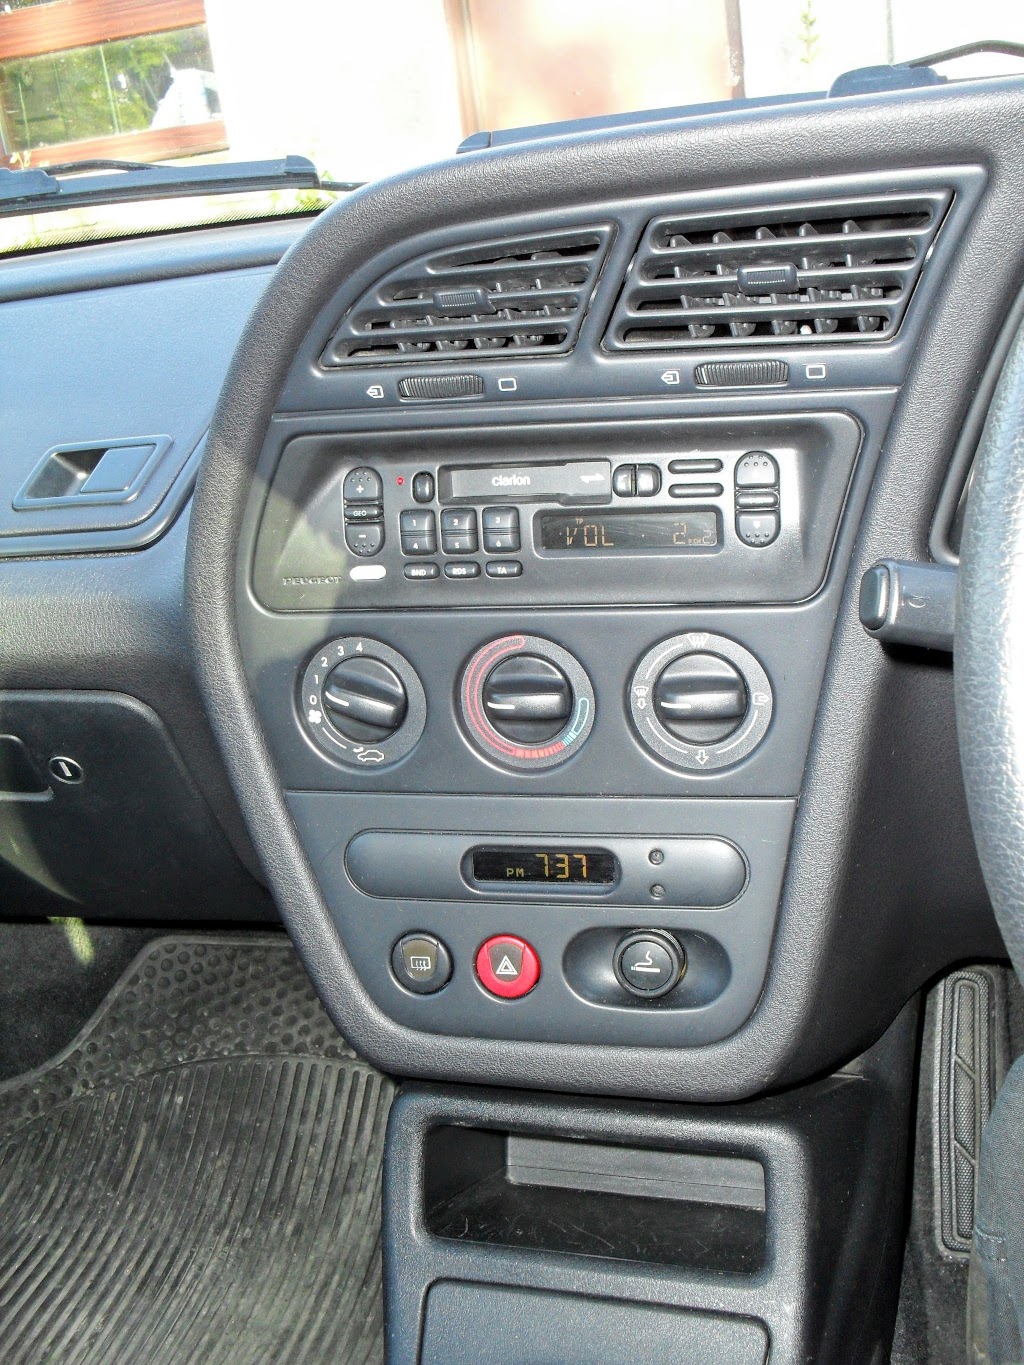 1998 Peugoet 306 Sedan dash centre console